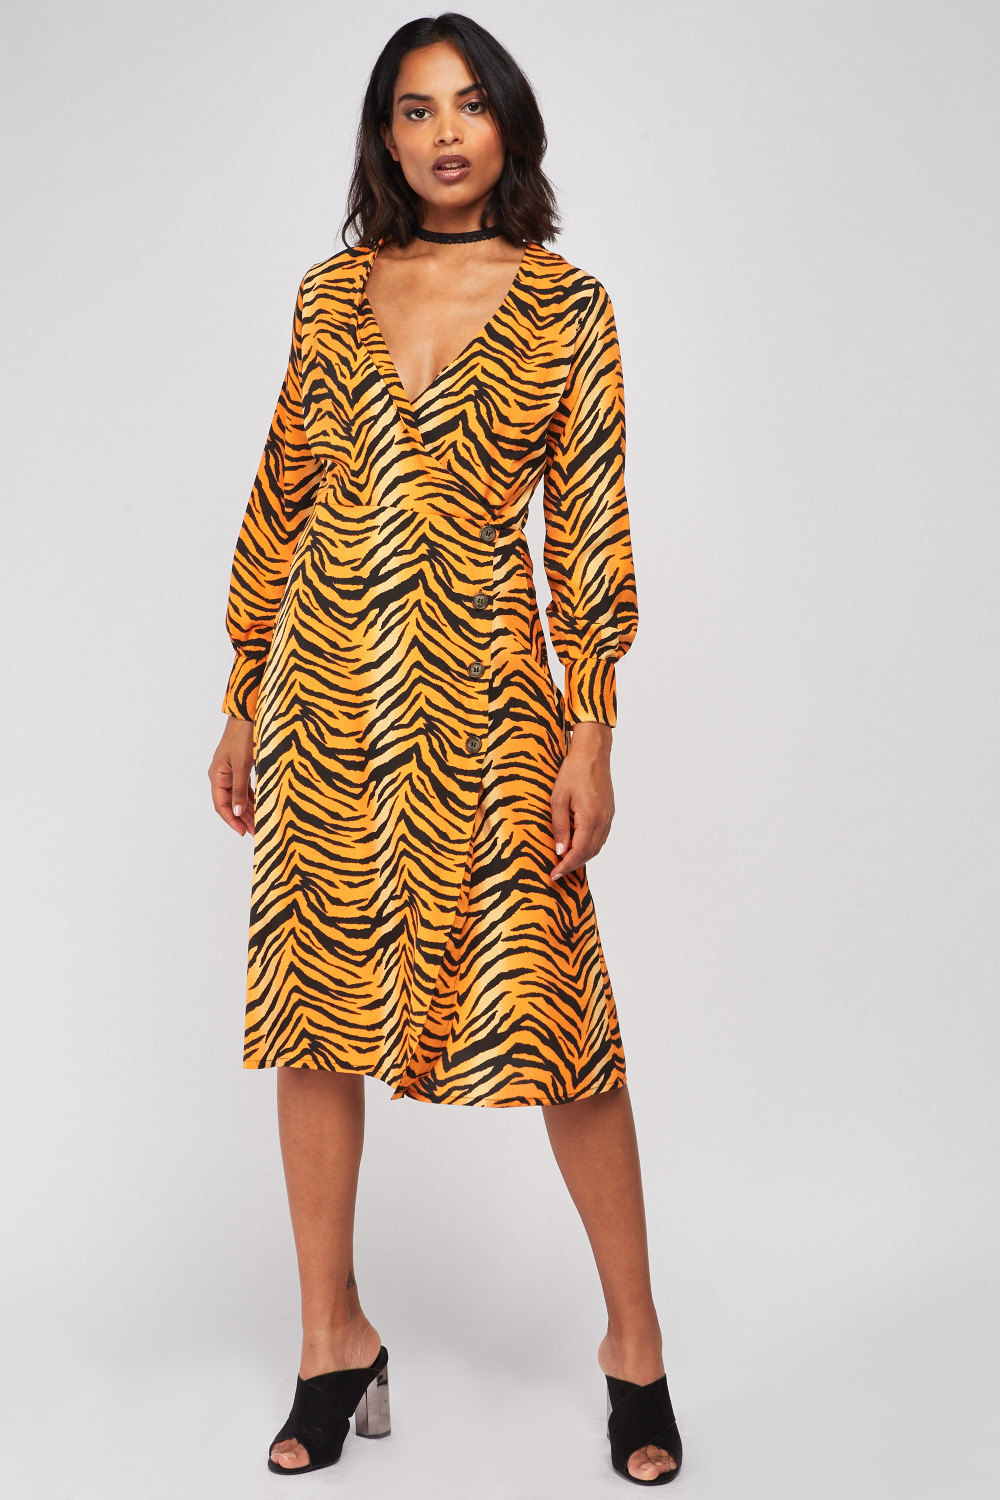 Tiger Print Midi Wrap Dress - Just $7